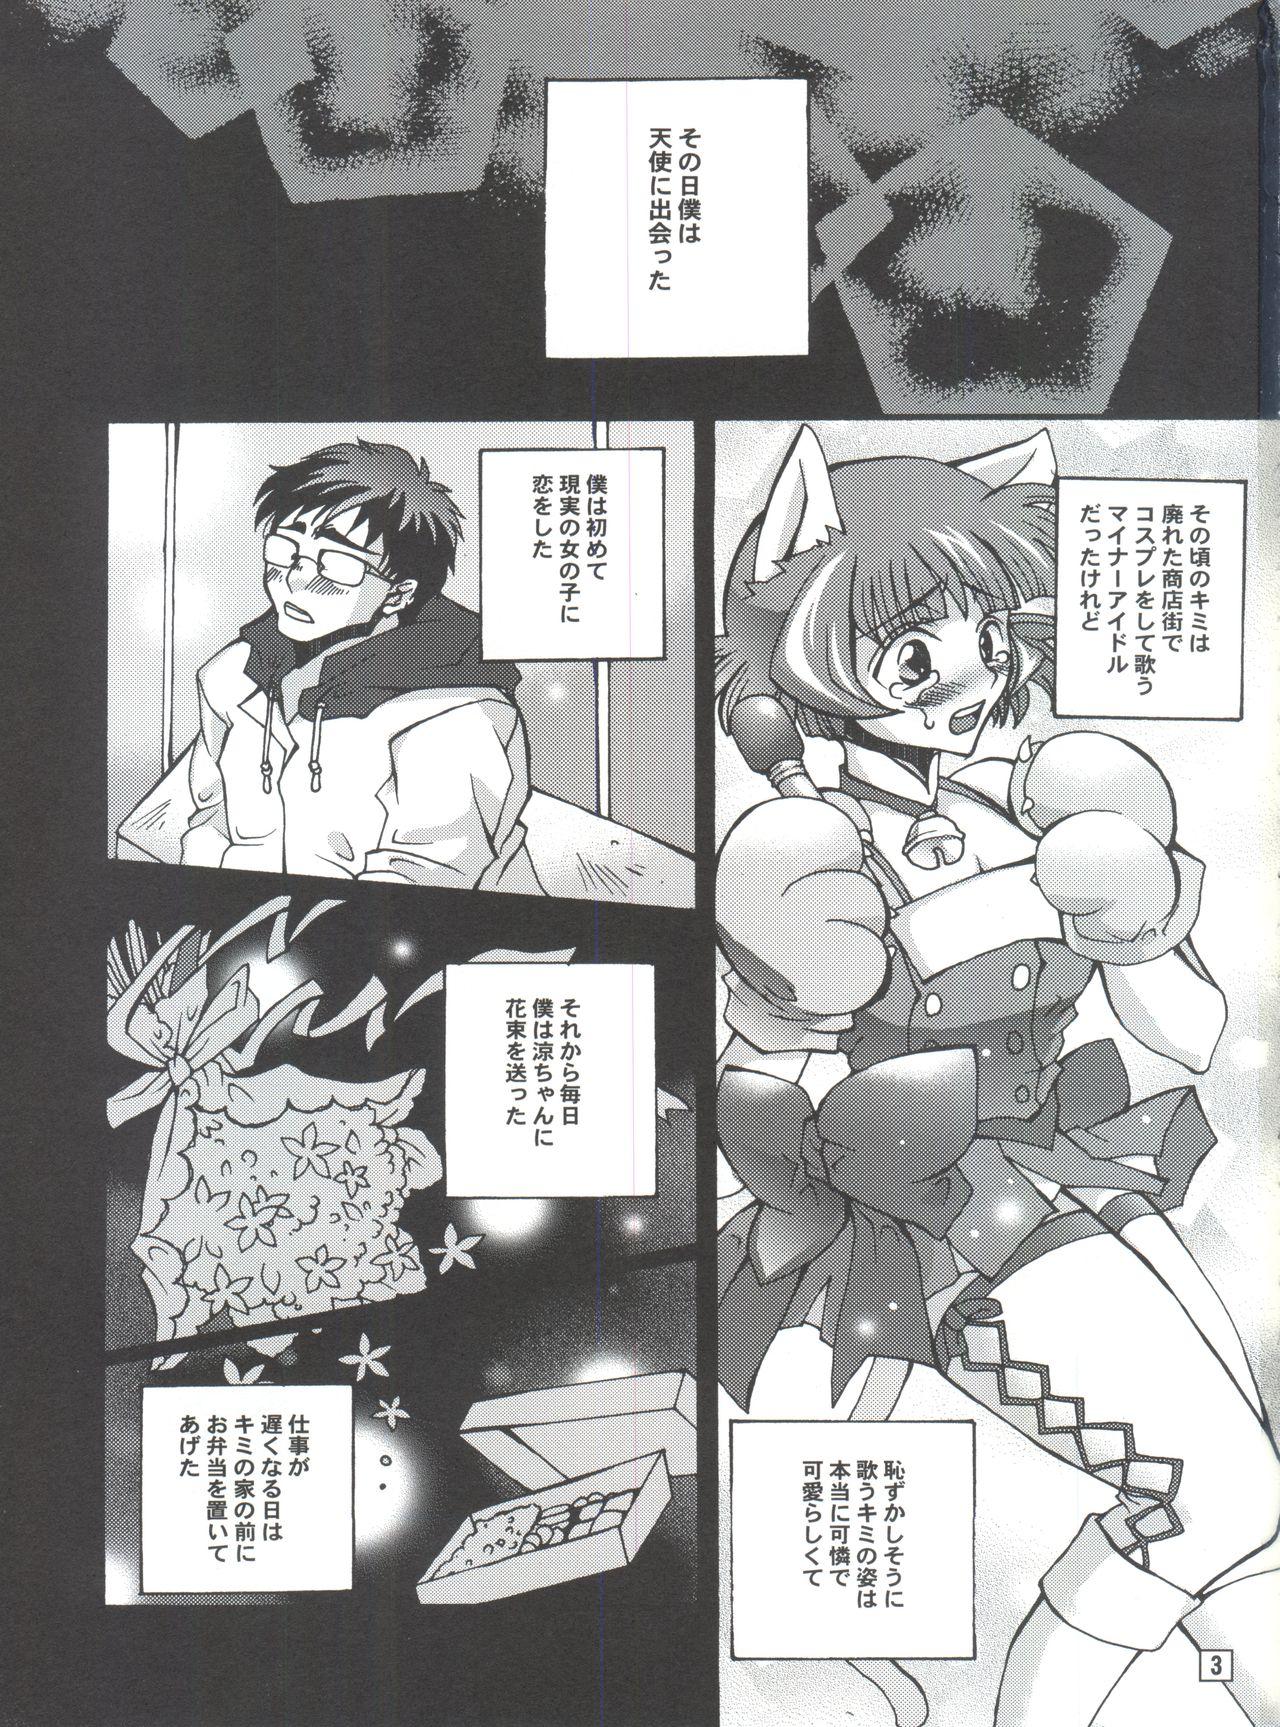 She Ochiru Idol - The idolmaster Skirt - Page 2